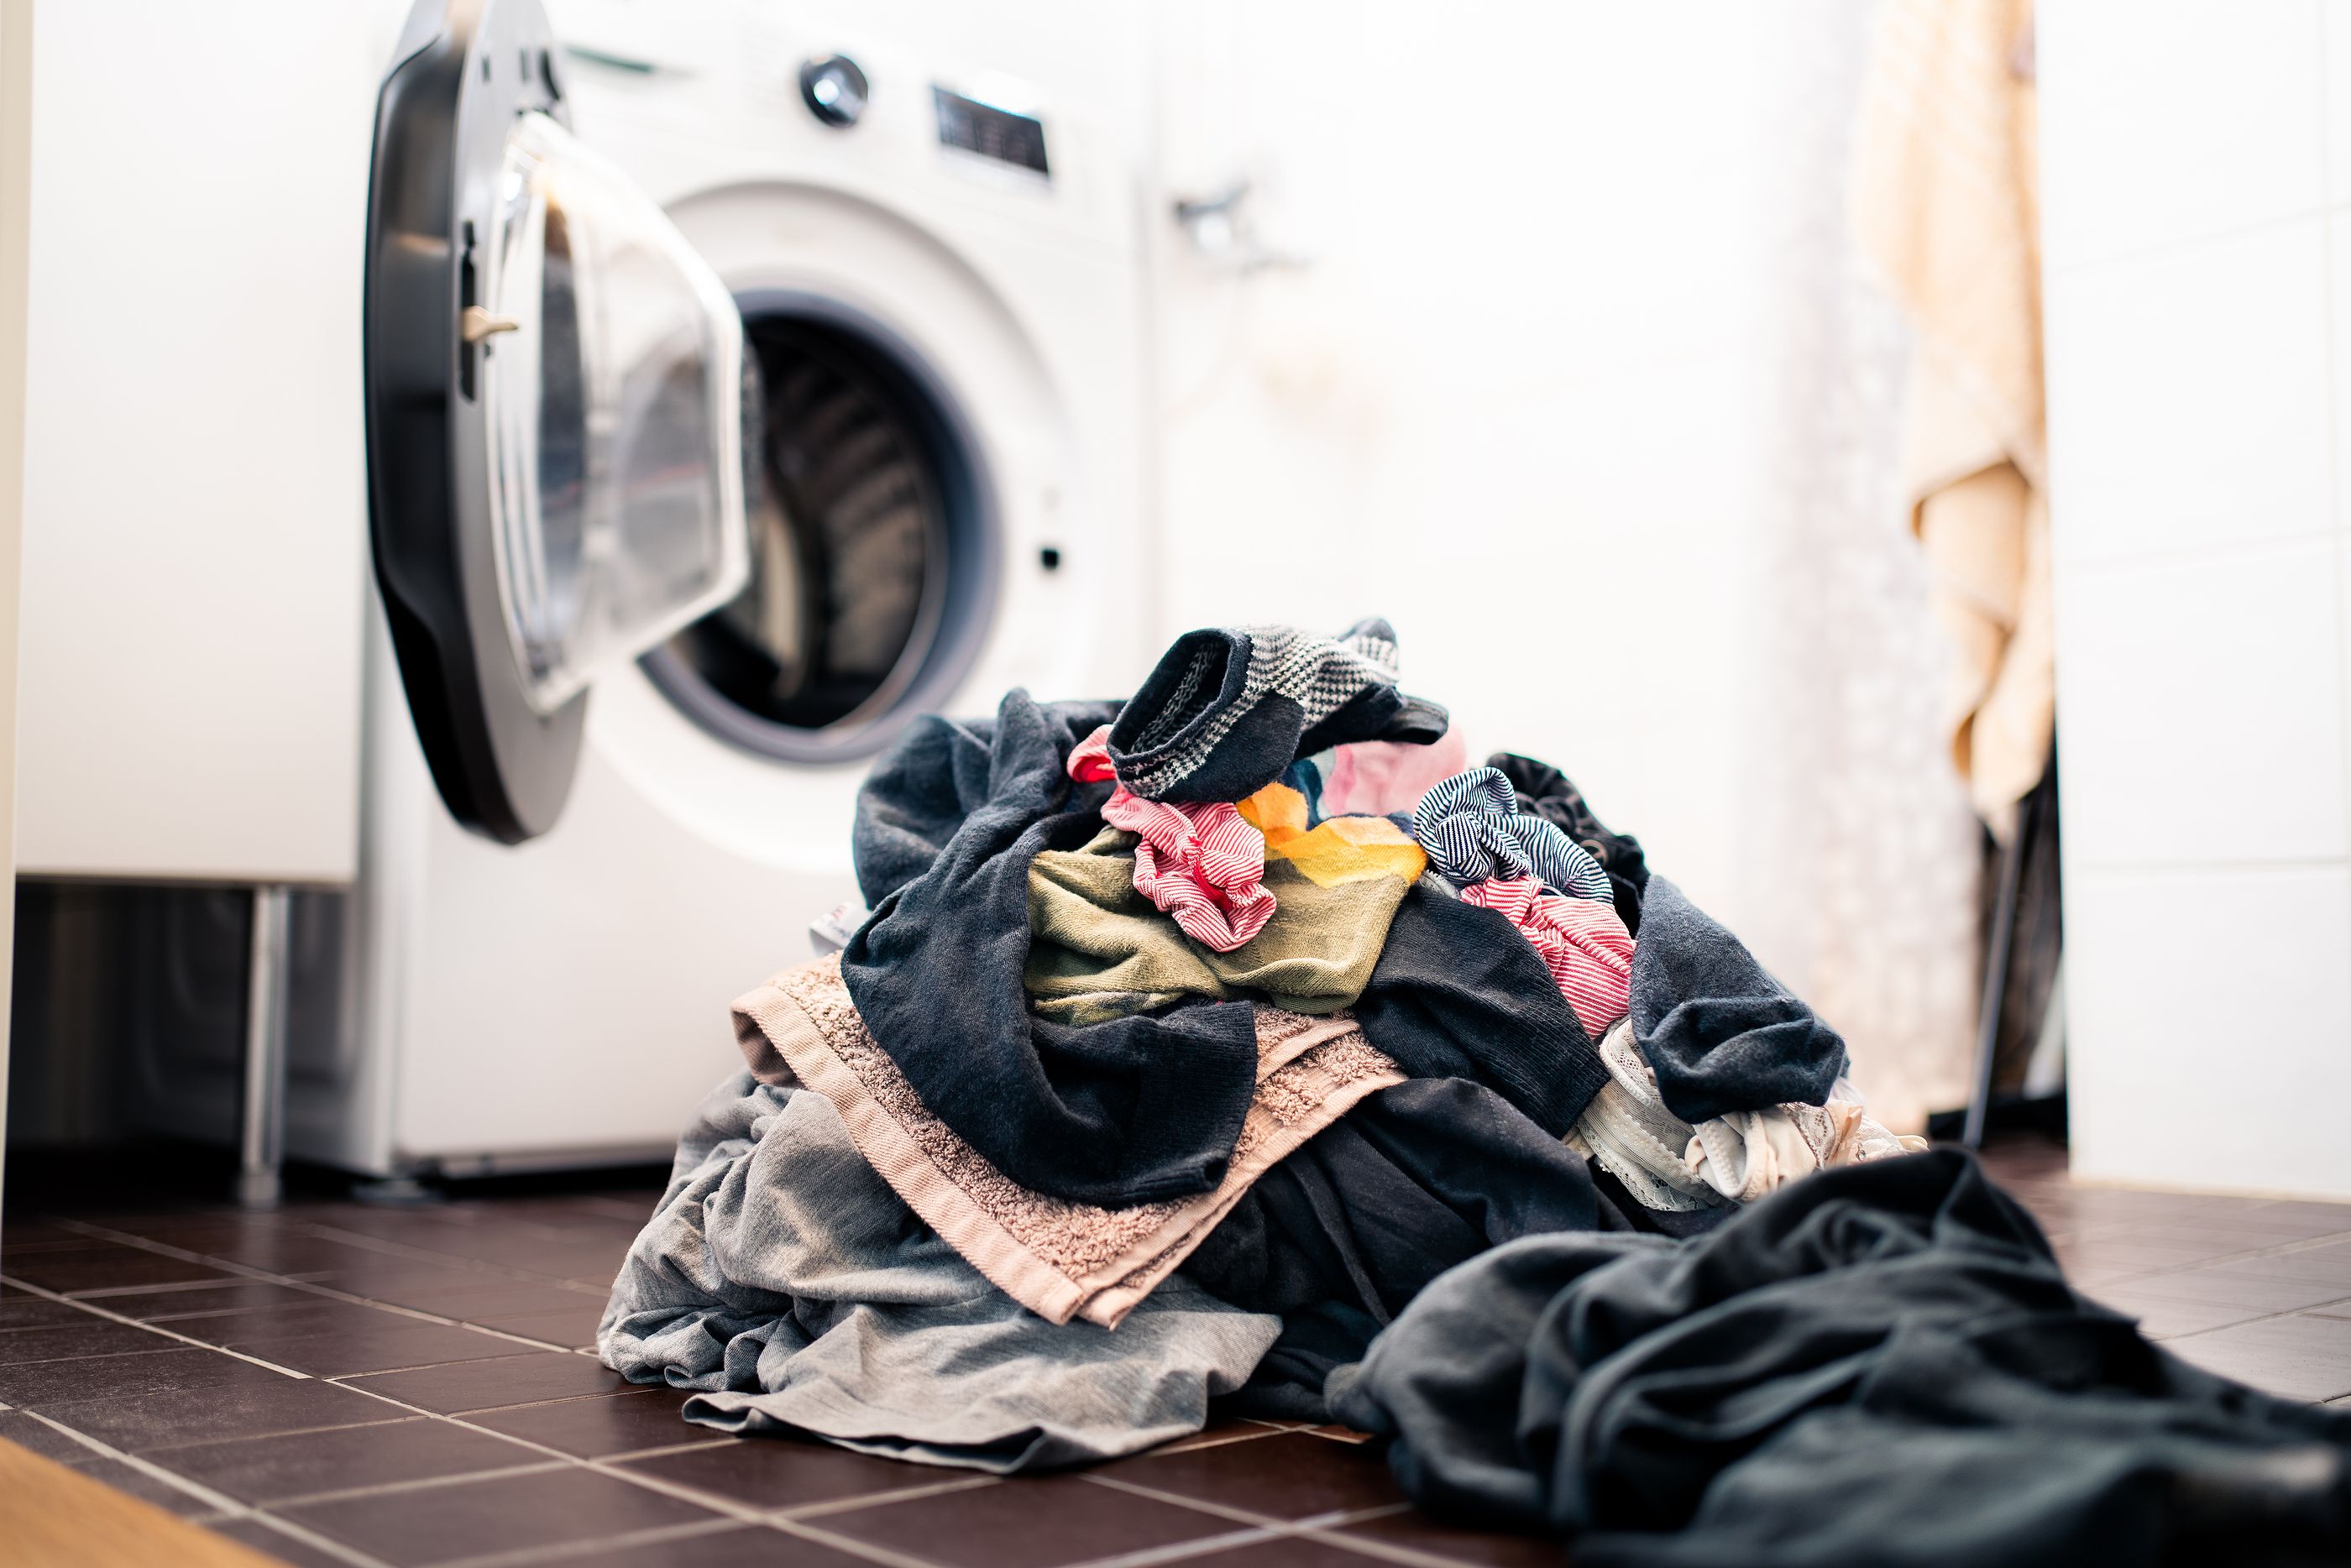 Consejos para evitar que se estropee la ropa en la secadora y no encoja